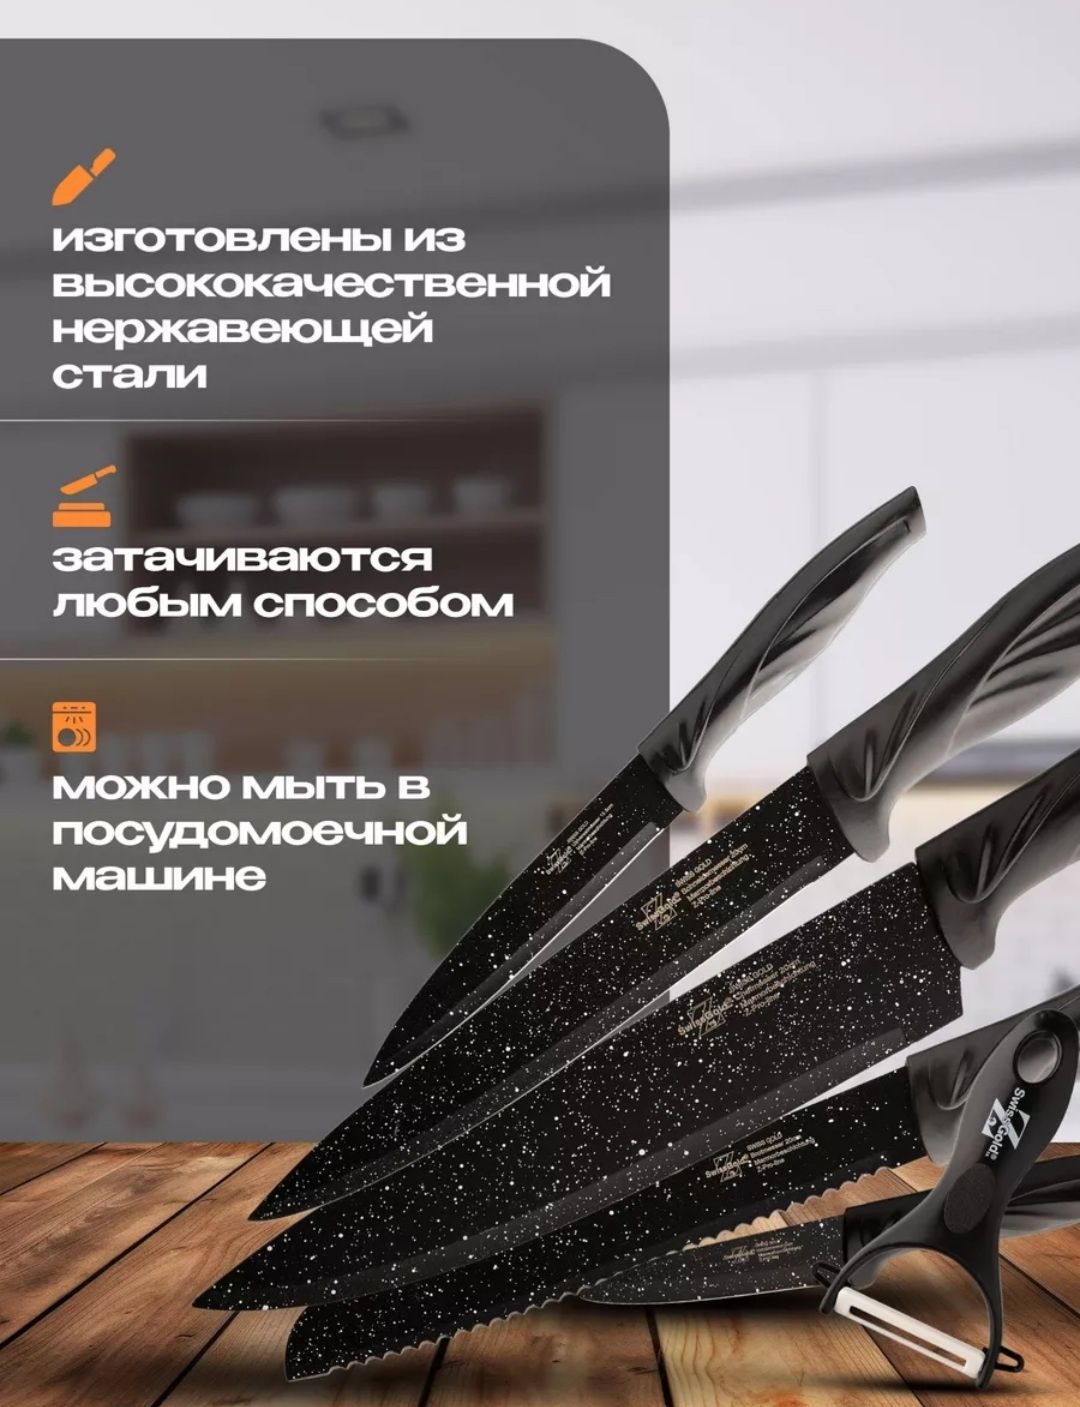 Набор из 5 ножей